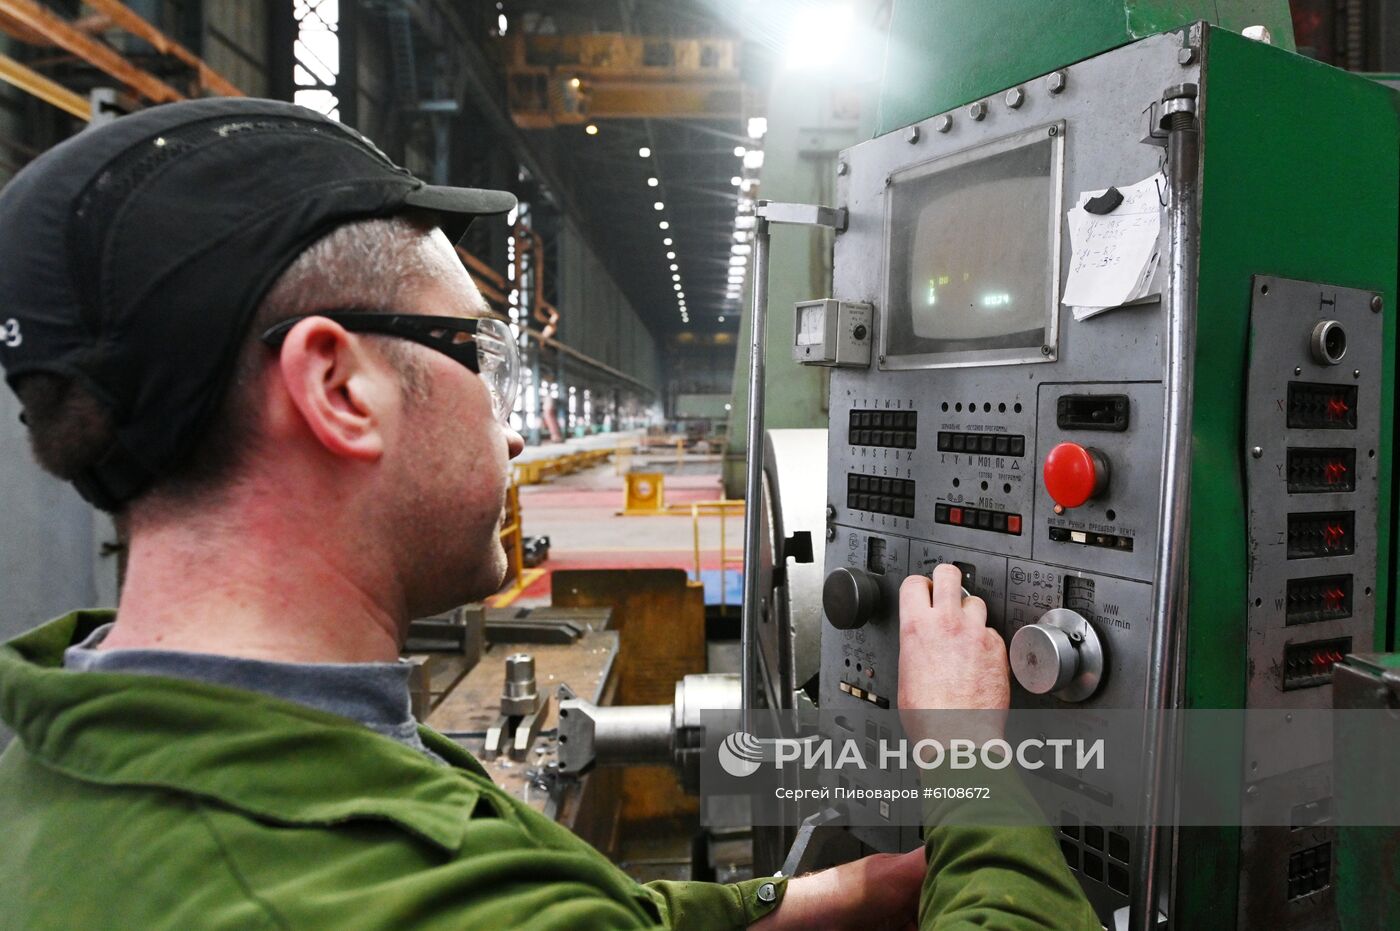 Производственная площадка завода "Атоммаш" в Волгодонске